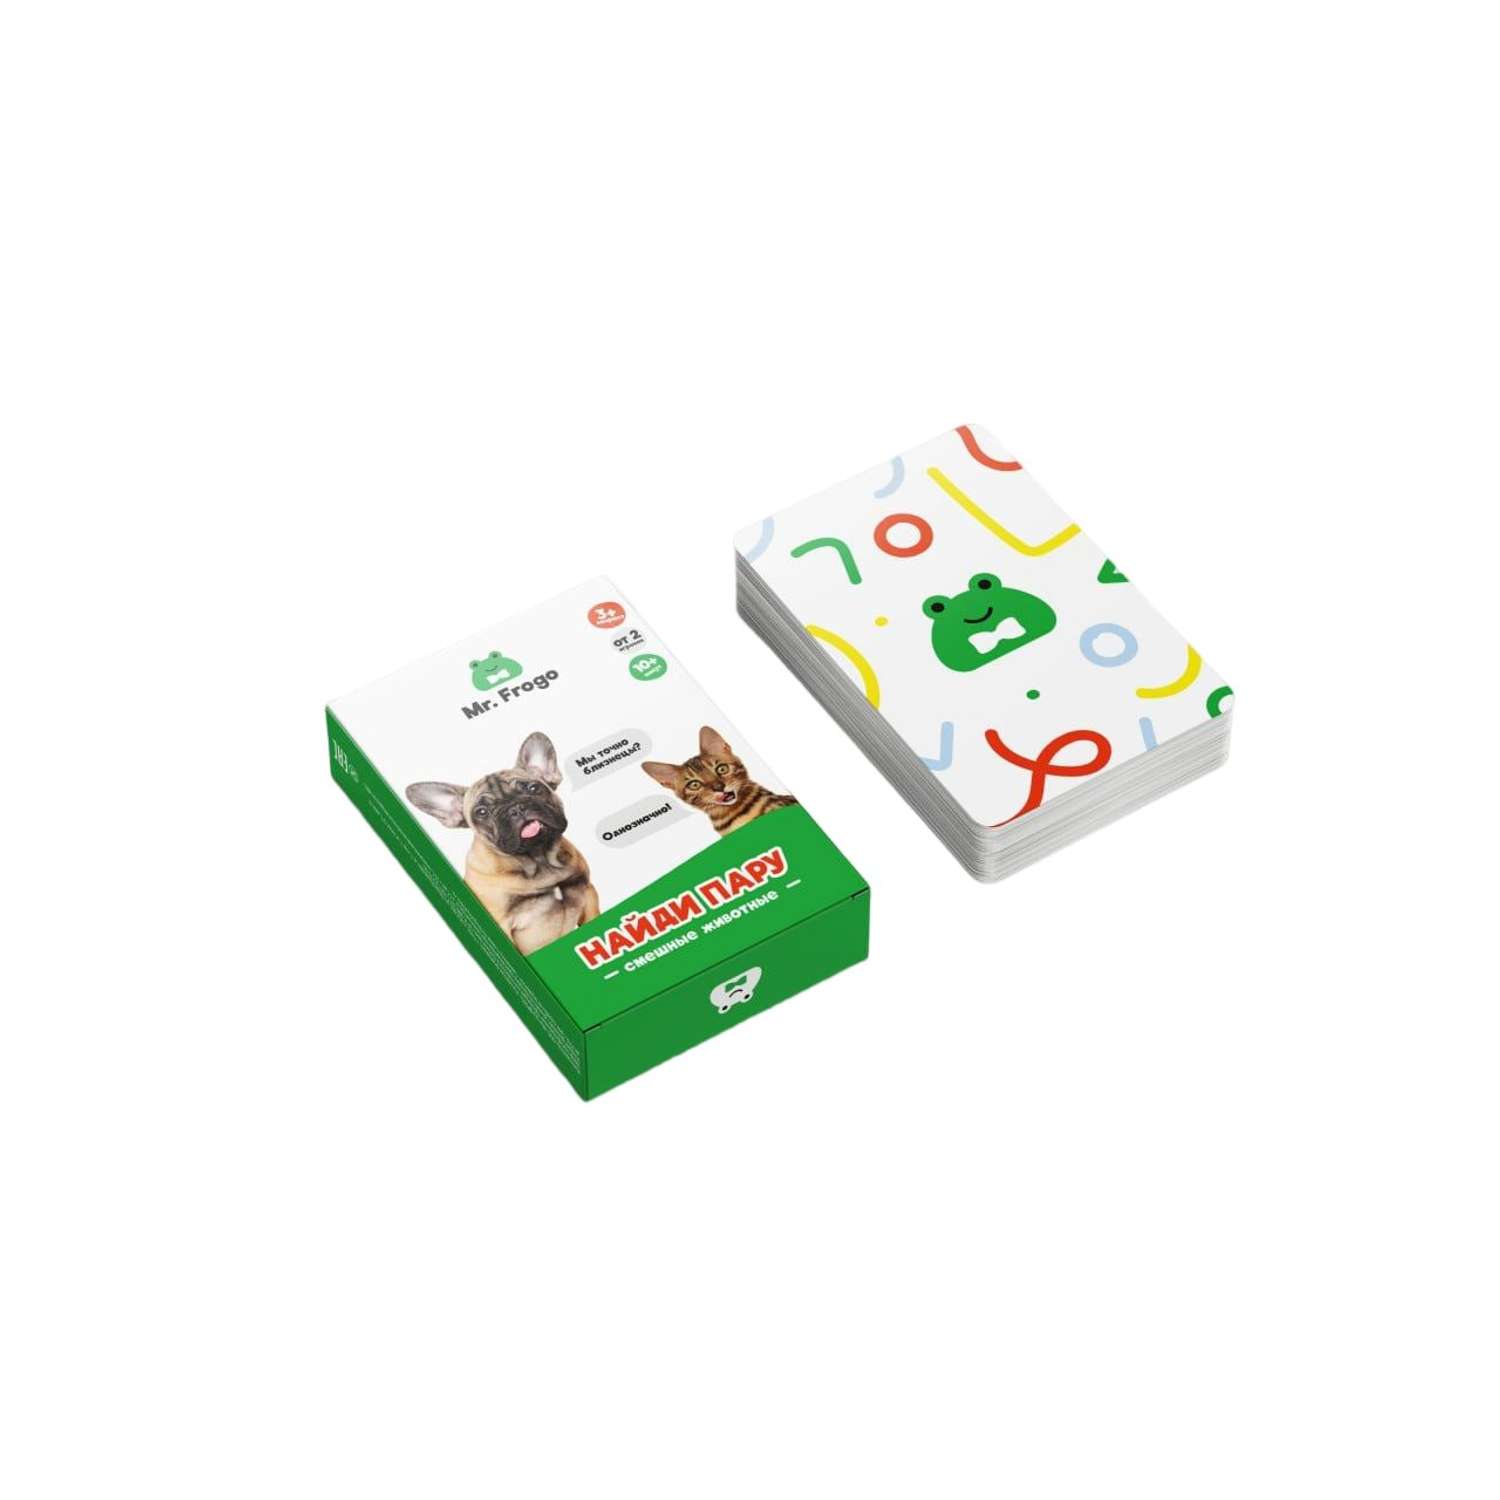 Настольная карточная игра Mr. Frogo Найди пару животных мемонри - фото 9